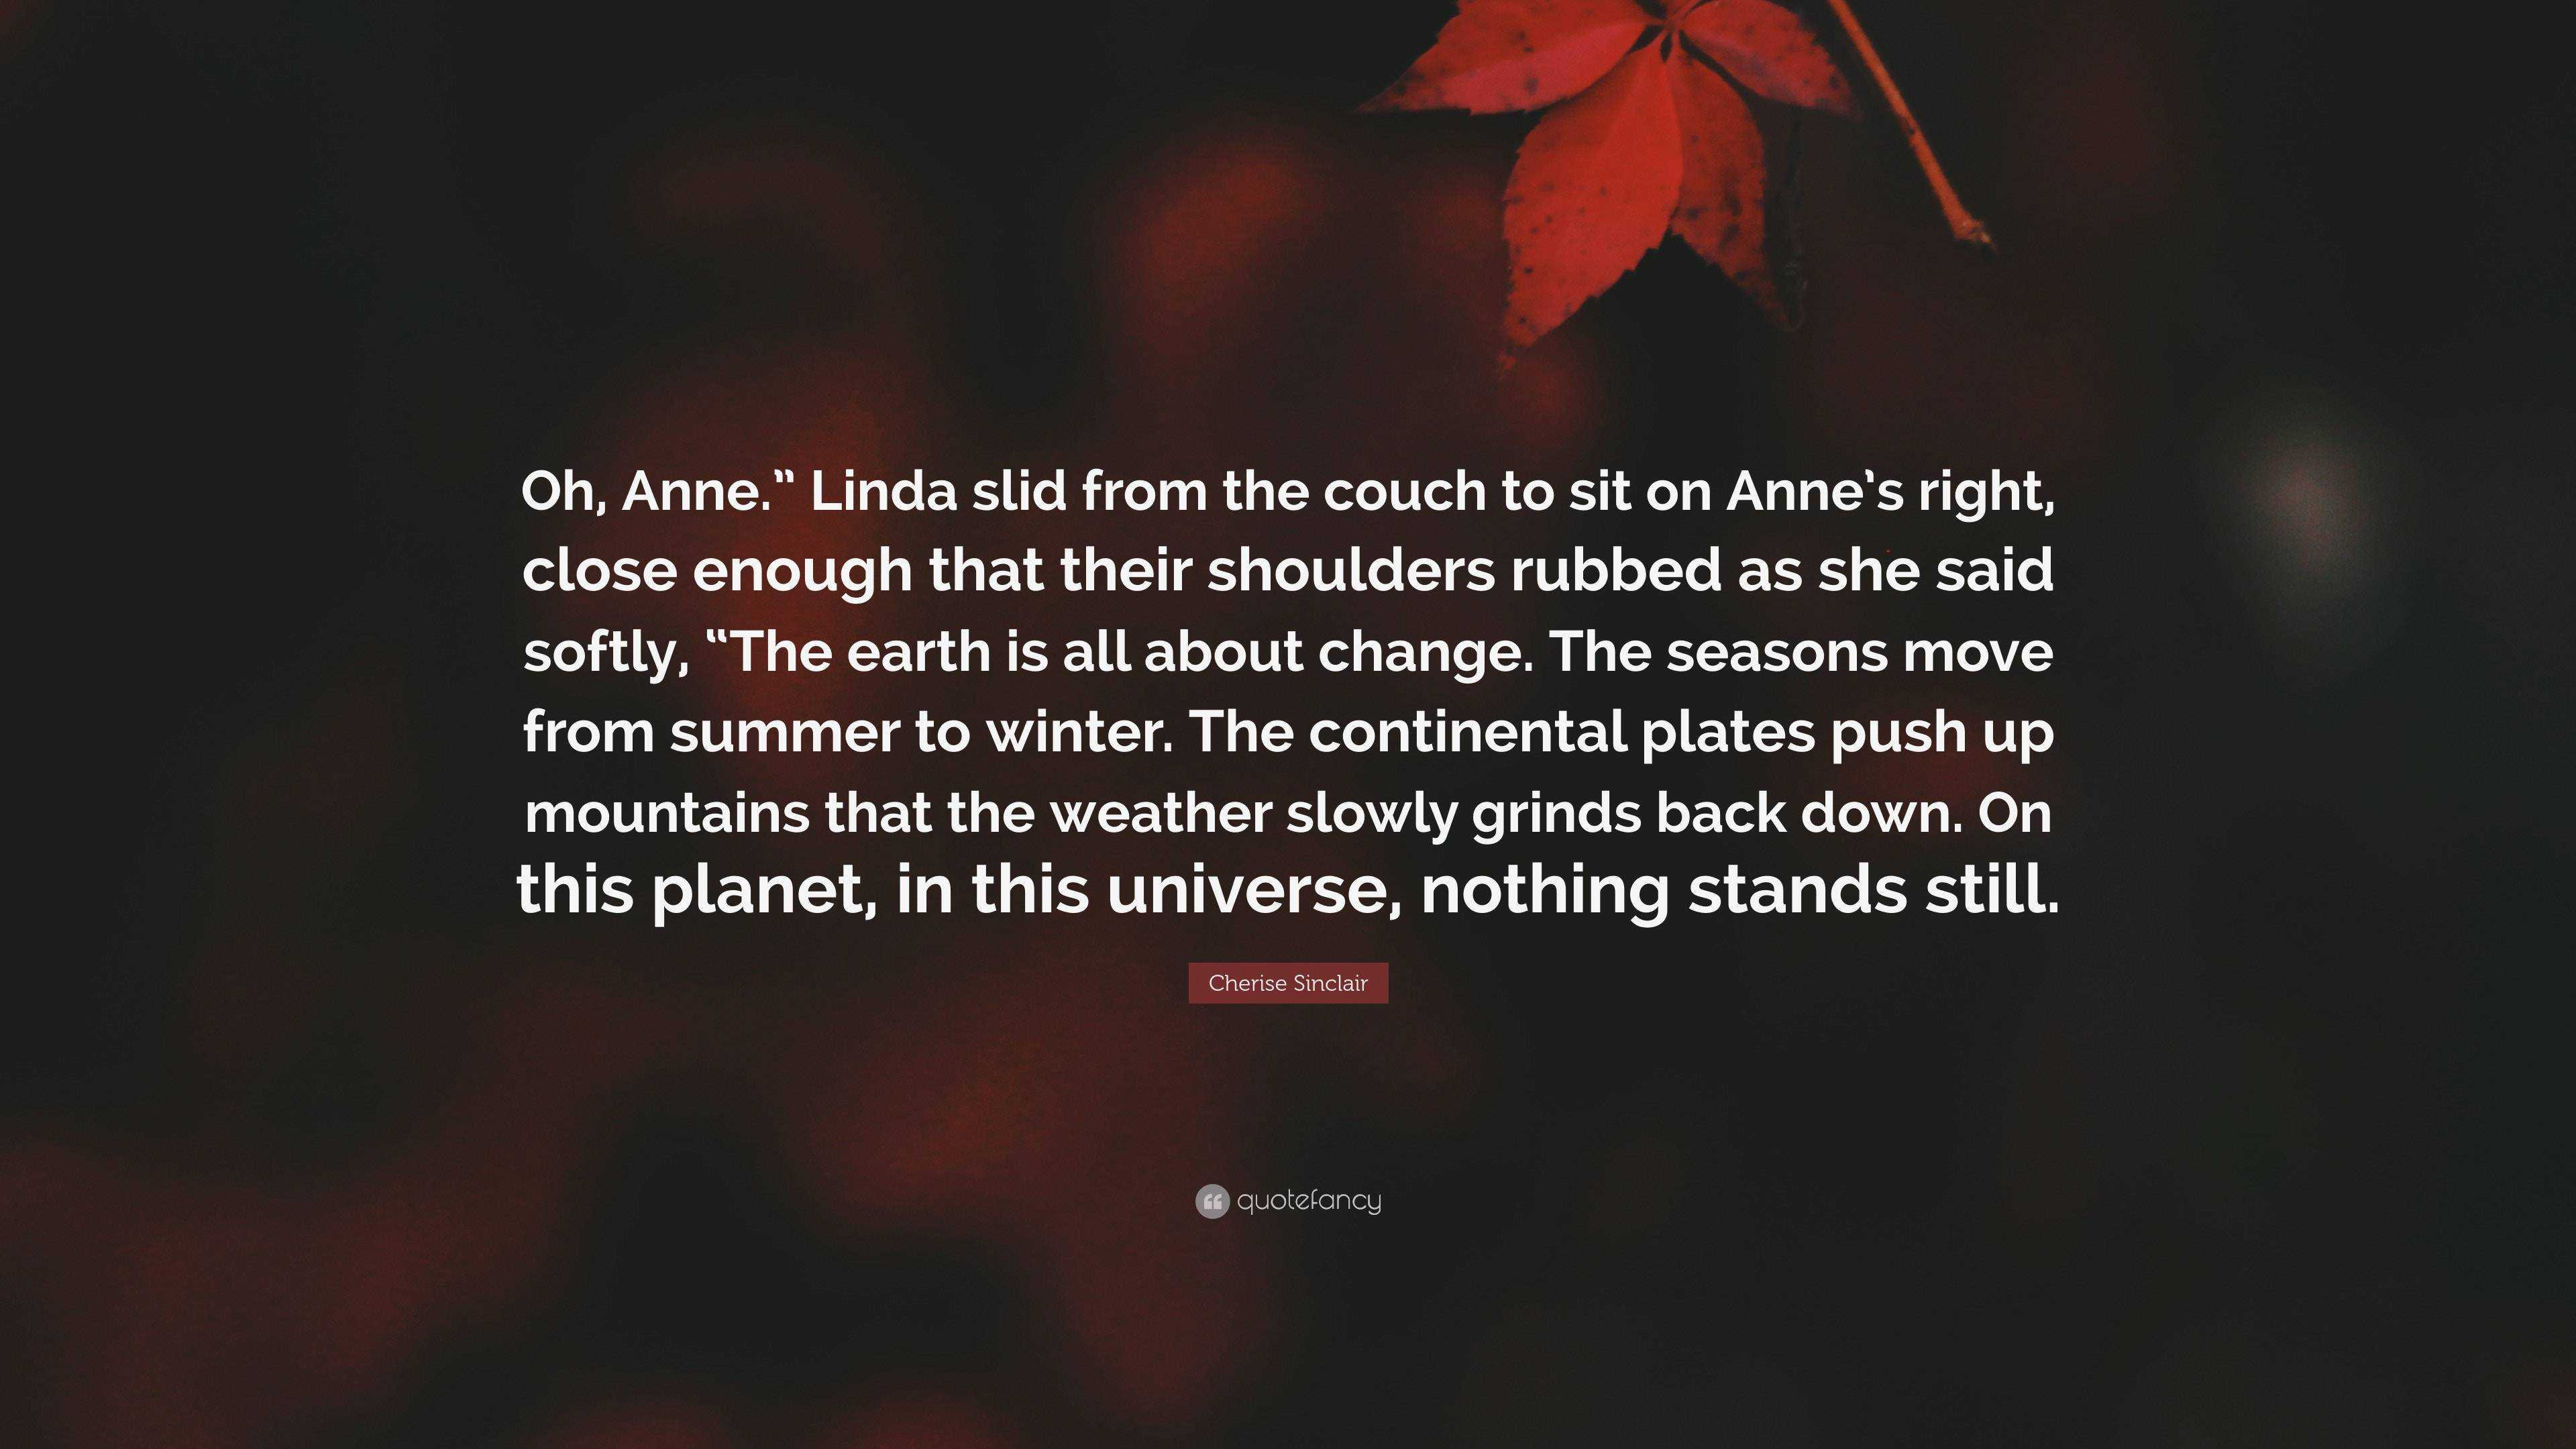 Ane's Universe